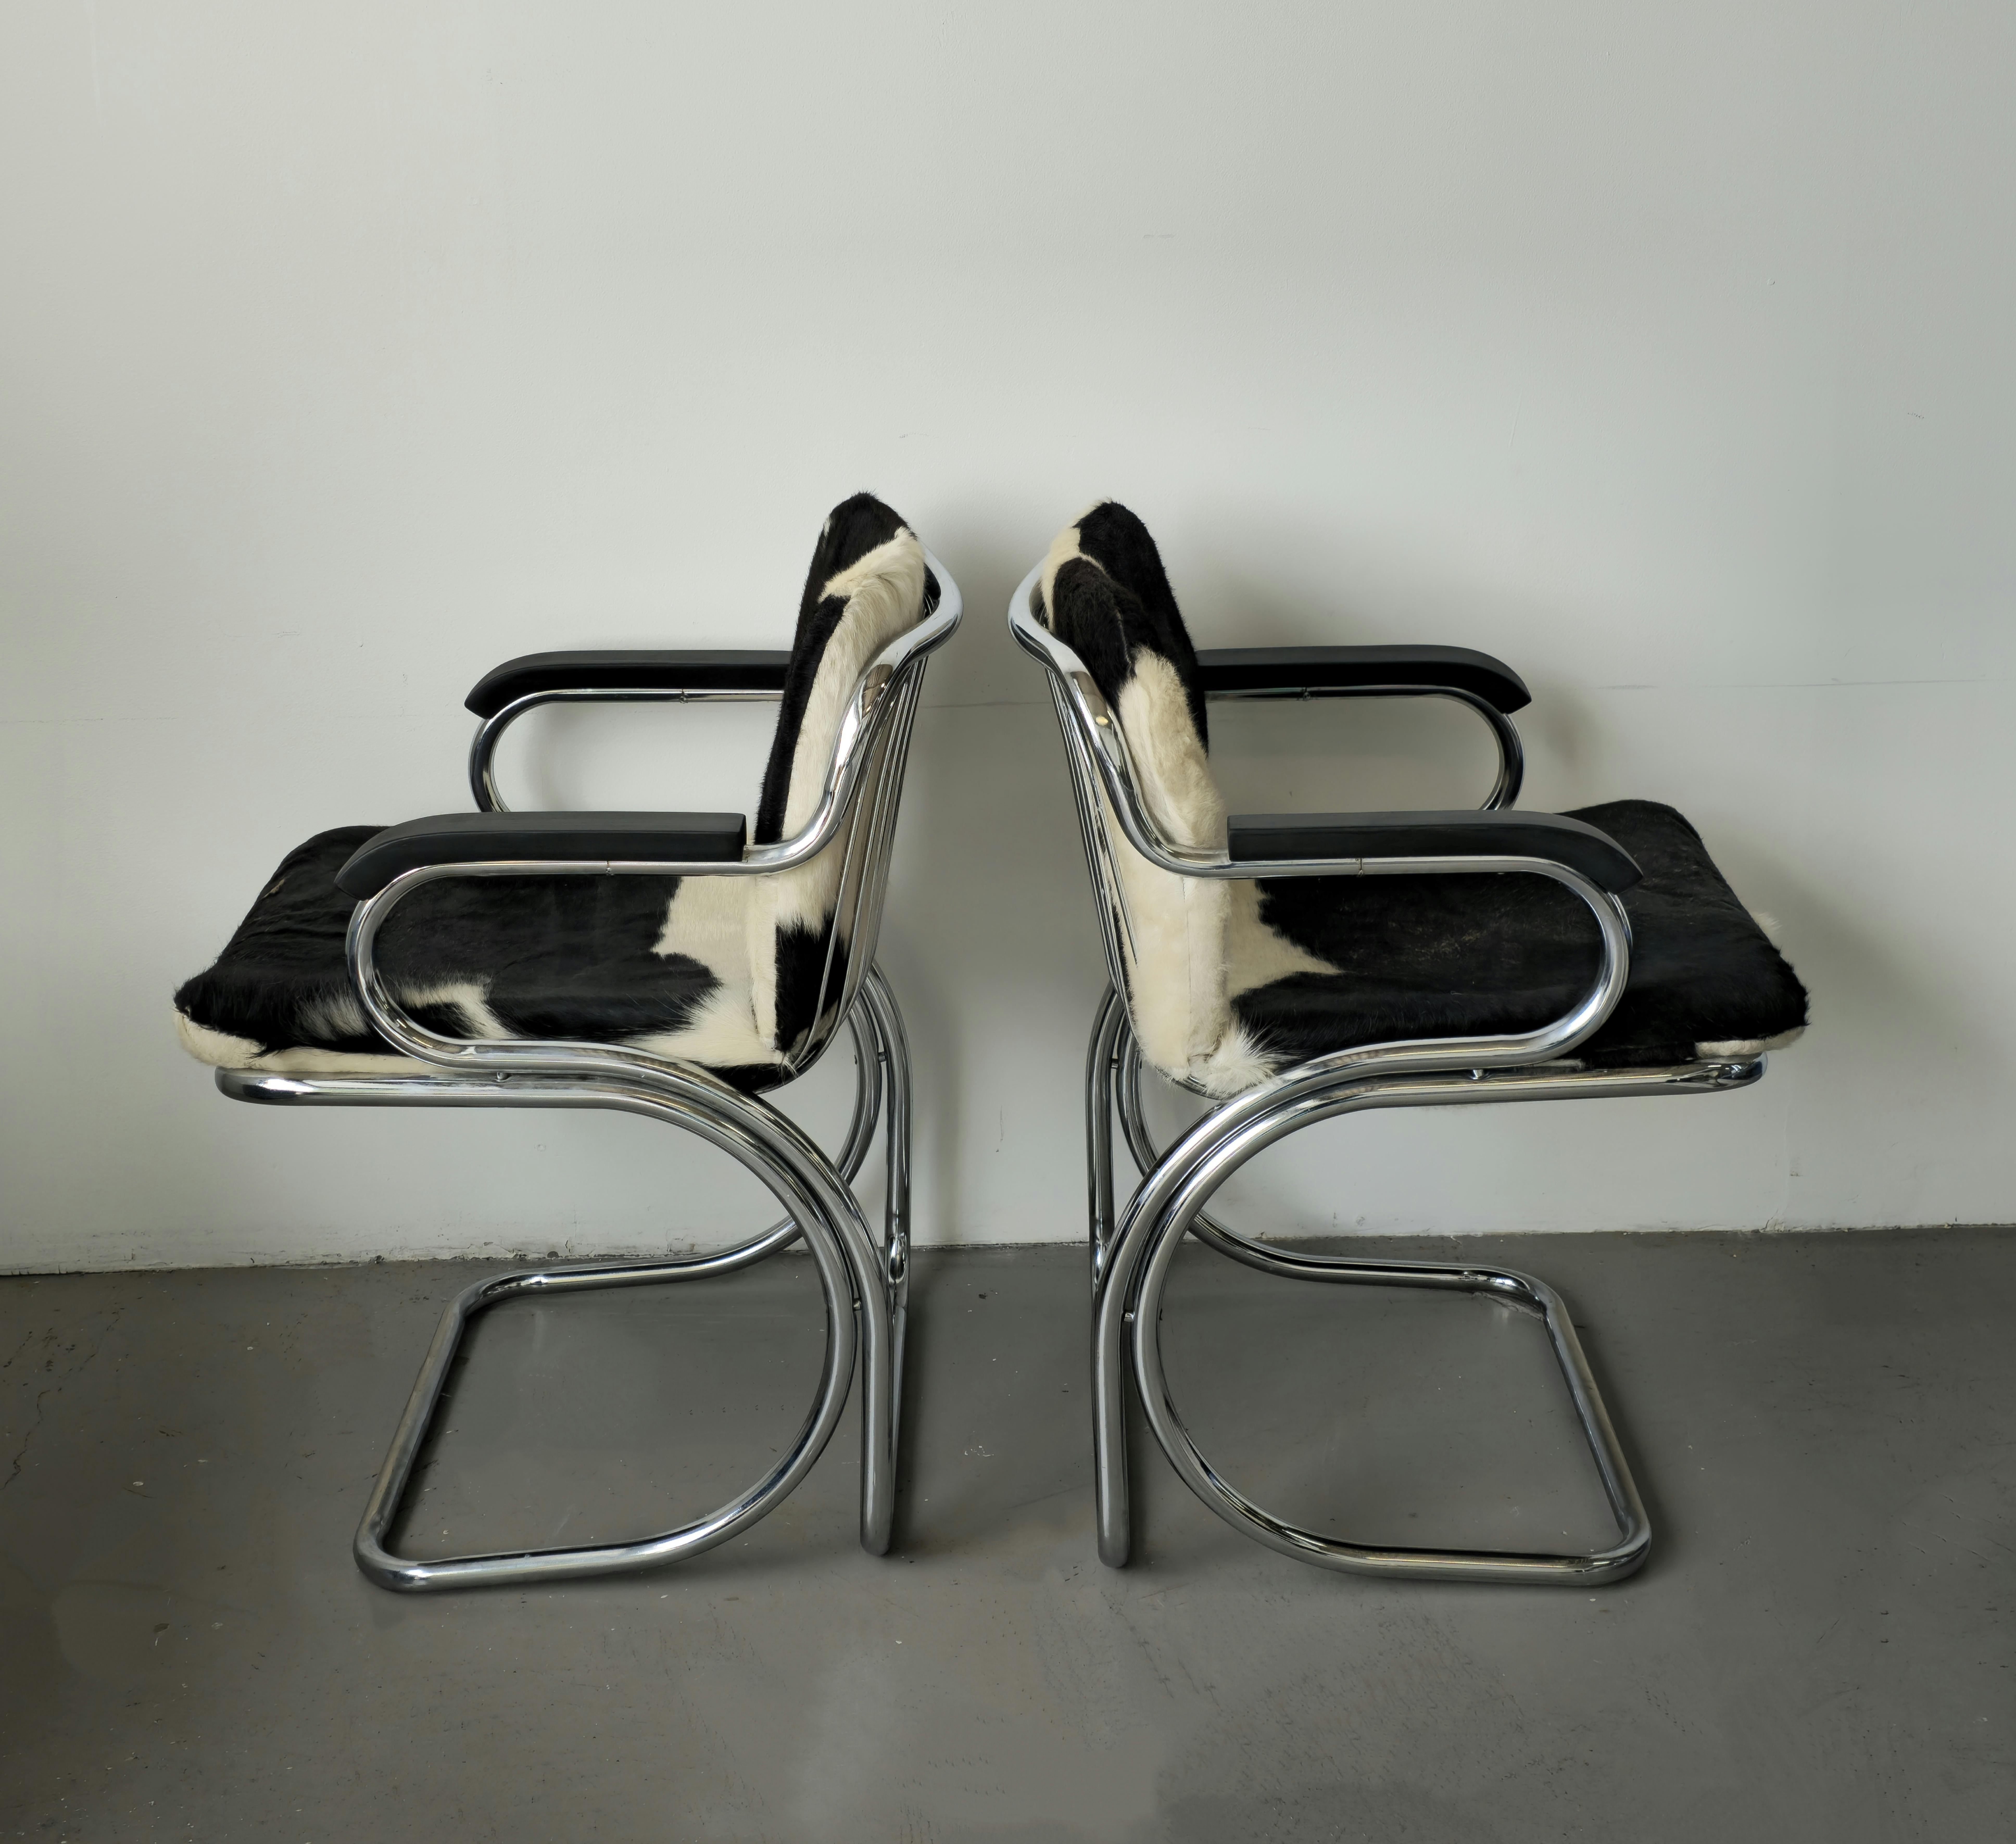 Atemberaubende skulpturale Gastone Rinaldi Chromstühle aus Italien in den 1970er Jahren. Diese freischwingenden Sessel haben einen verchromten Korpus und Cowhide-Kissen. Die Armlehnen wurden passend zu den Cowhide-Kissen mit schwarzer Beize